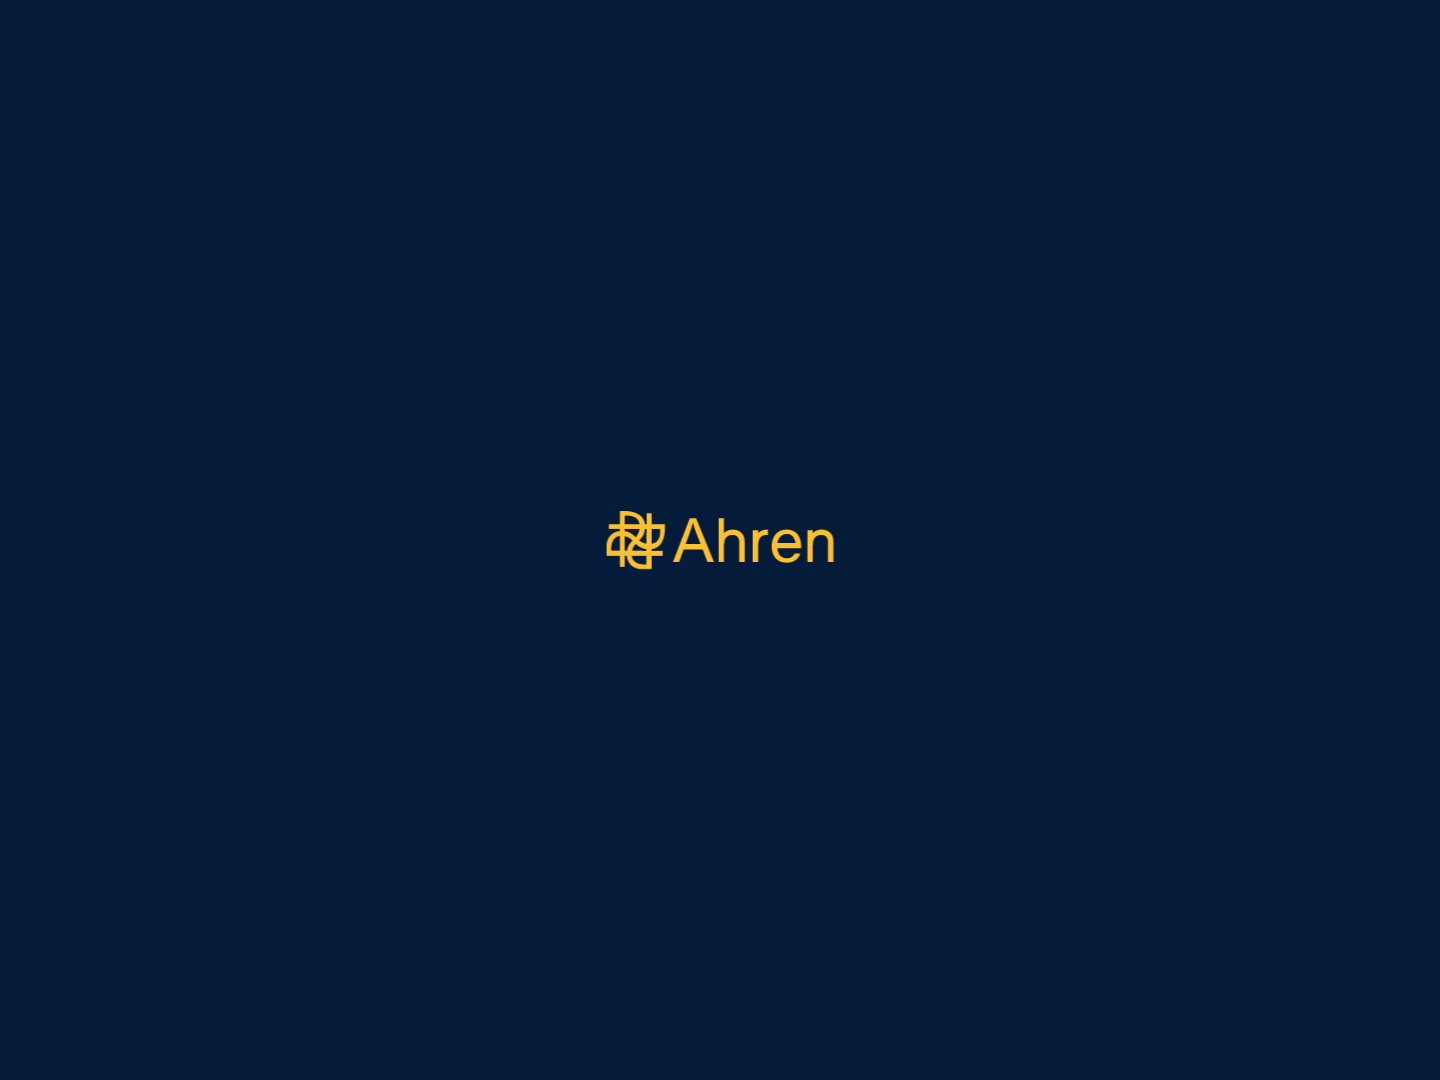 Ahren Innovation Capital